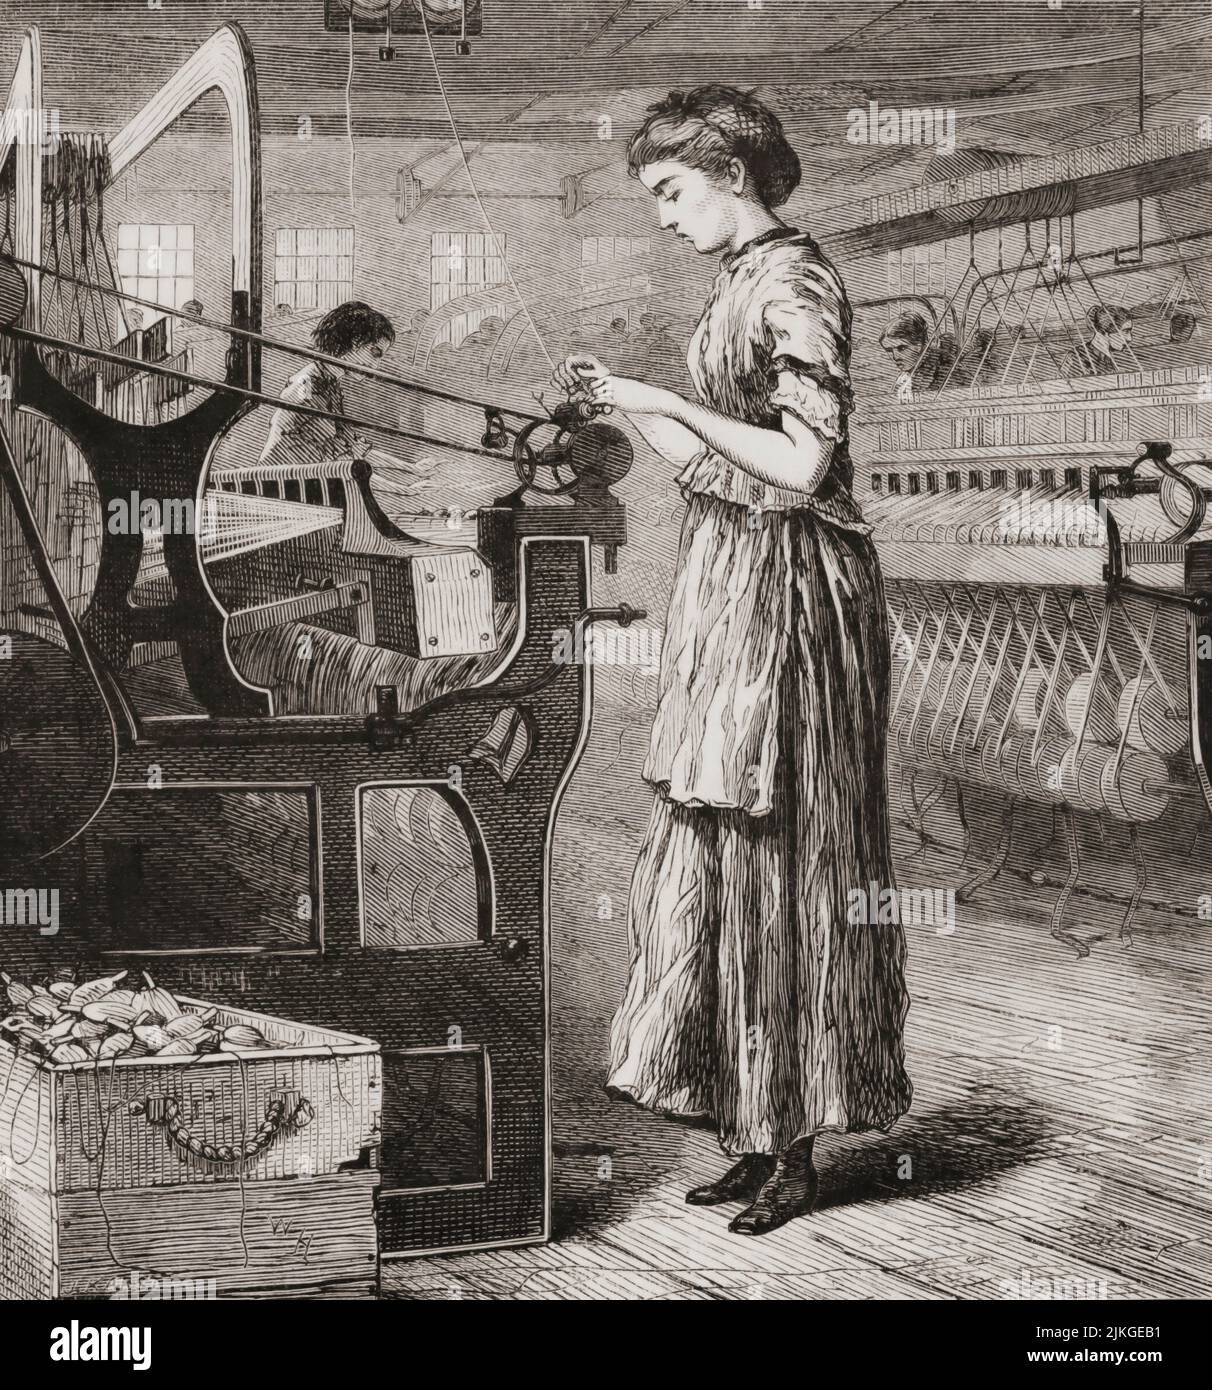 Mujer trabajando en un telar en una fábrica en el siglo 19th, Estados Unidos de América. Después de una ilustración de Winslow Homer. Foto de stock